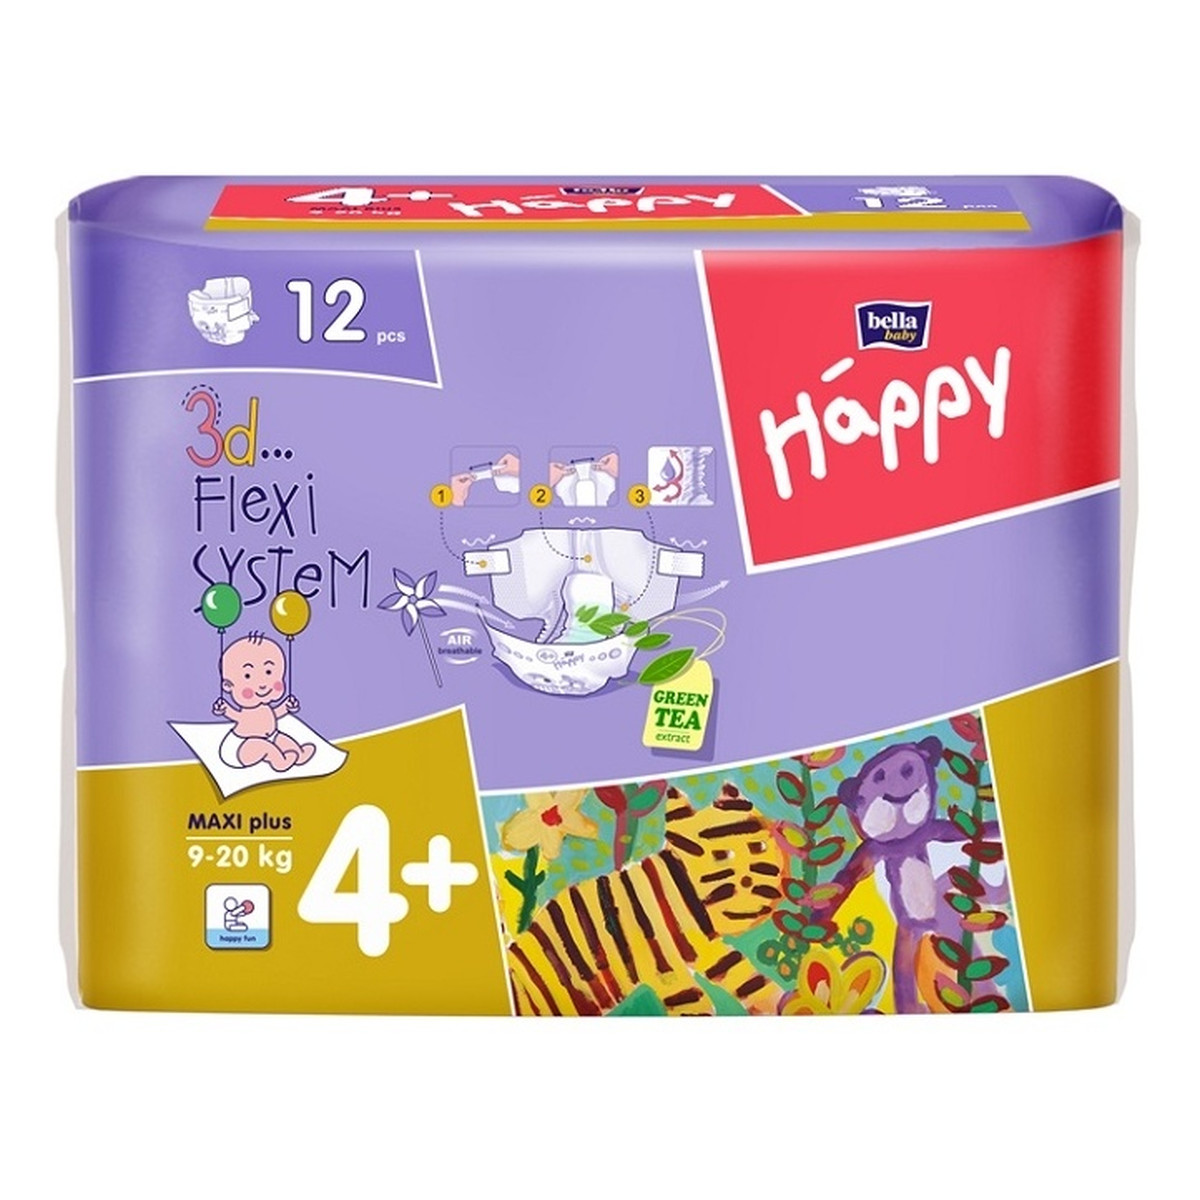 Bella Maxi Plus 4+ Happy Pieluszki Dla Dzieci 12 Sztuk 9 - 20 Kg